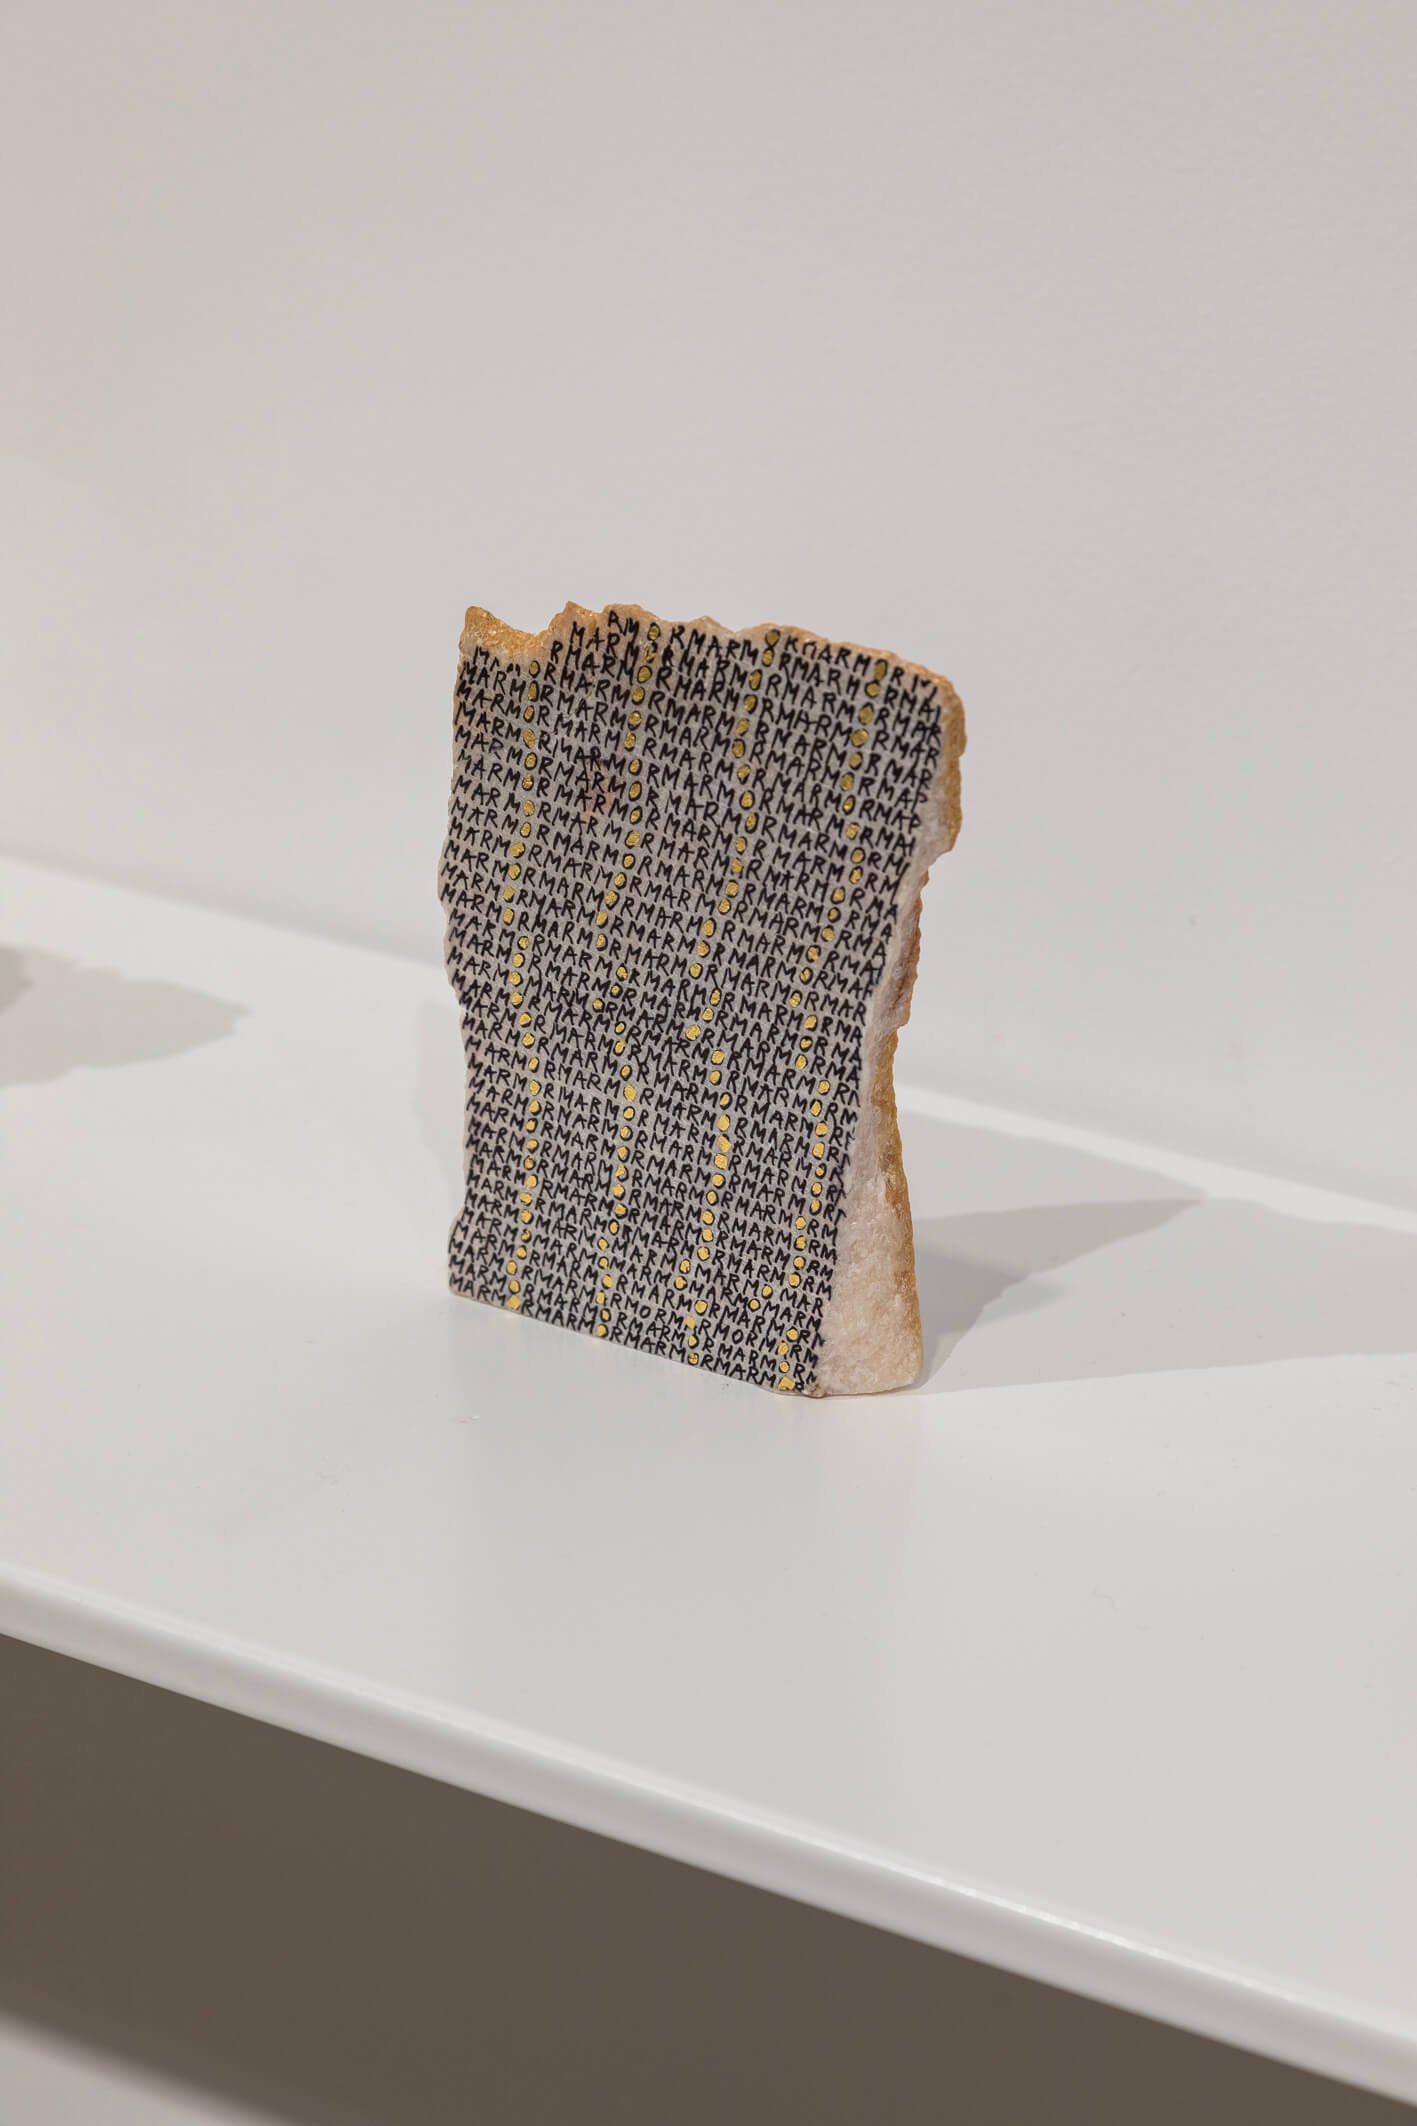  Greta Schödl, Installation view at 60th International Art Exhibition – La Biennale di Venezia,  Stranieri Ovunque – Foreigners Everywhere , 2024. Photo: Marco Zorzanello 